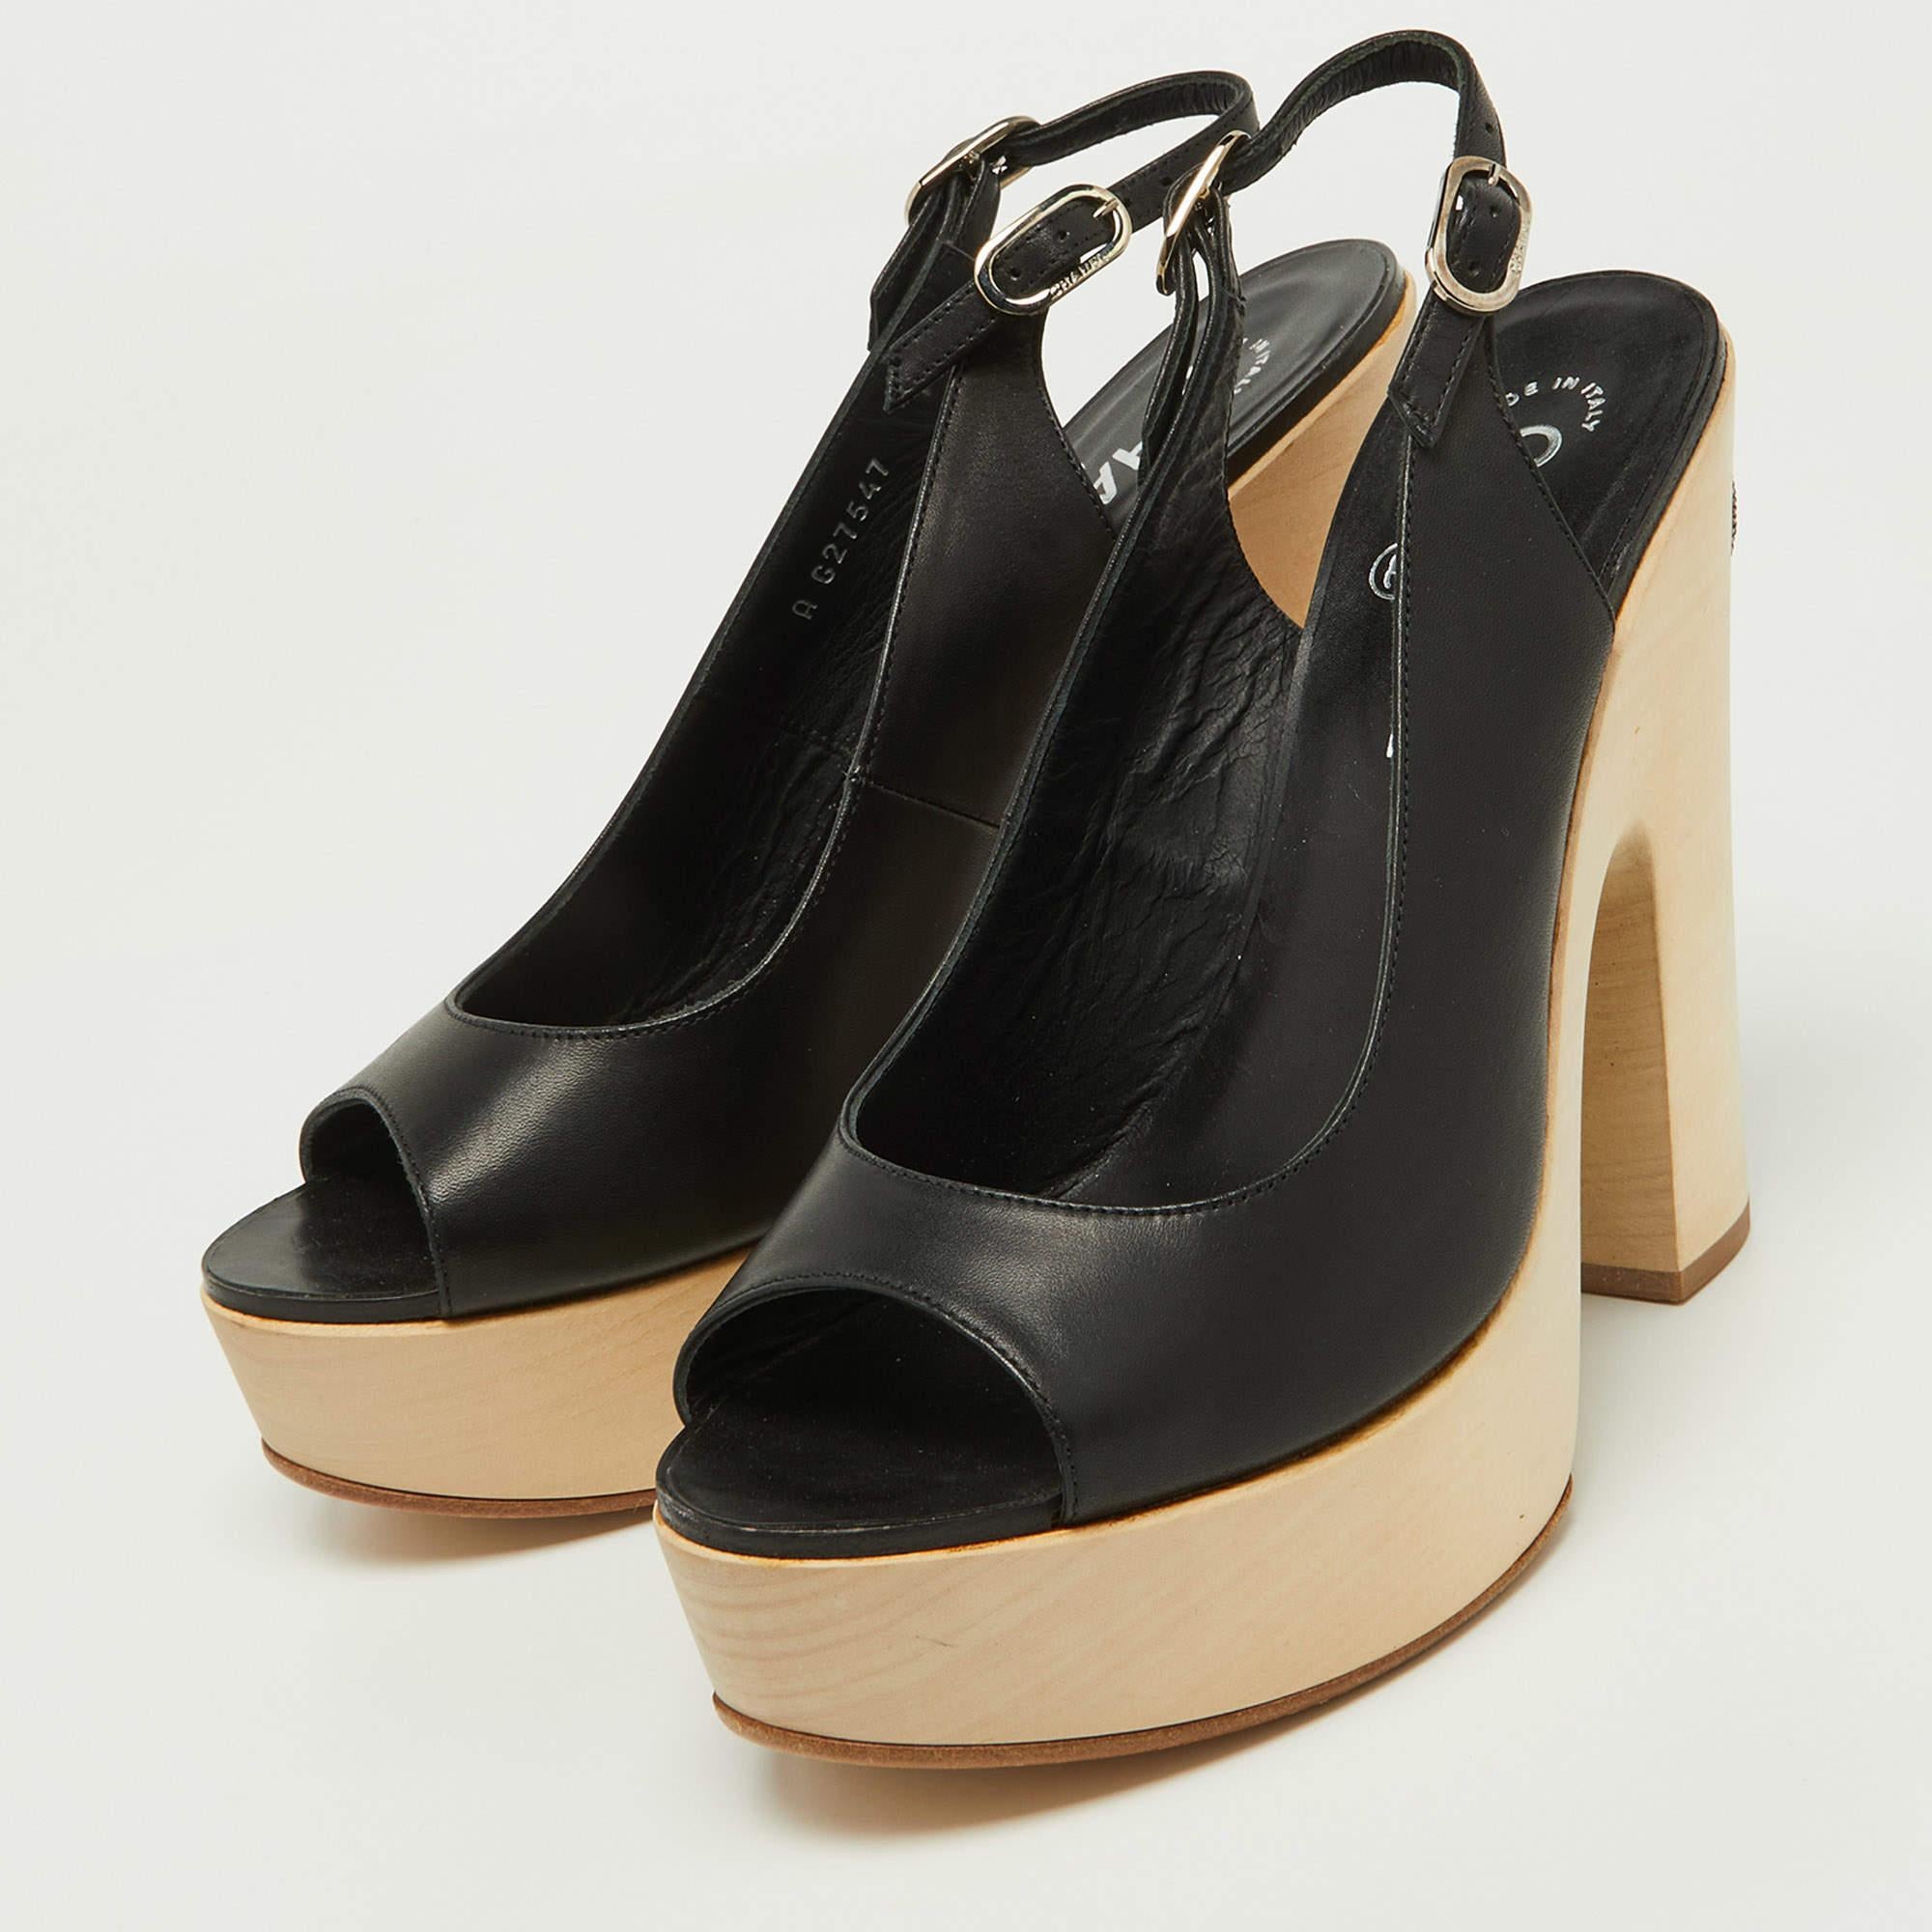 Chanel Black Leather Wooden Block Heel Slingback Platform Pumps Size 39 1